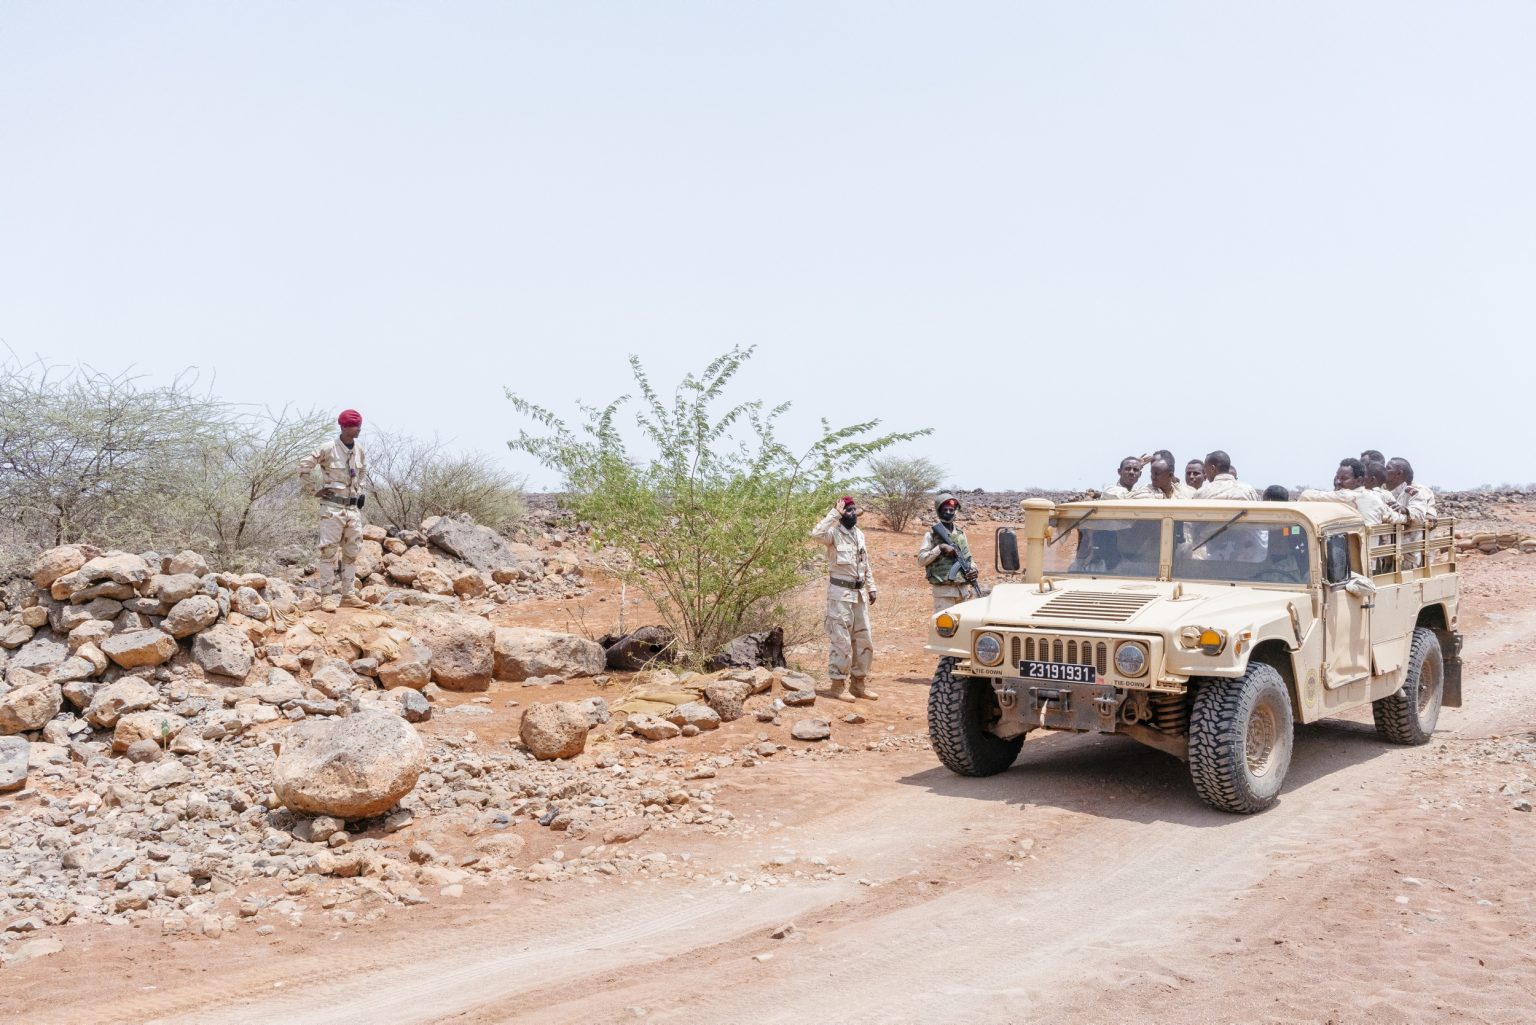 DJIBUTI. 13 settembre 2021 - Soldati di Gibuti in una zona rurale fuori dalla città.

DJIBOUTI. 13 September 2021 - Djibouti soldiers in a rural area outside Djibouti City.